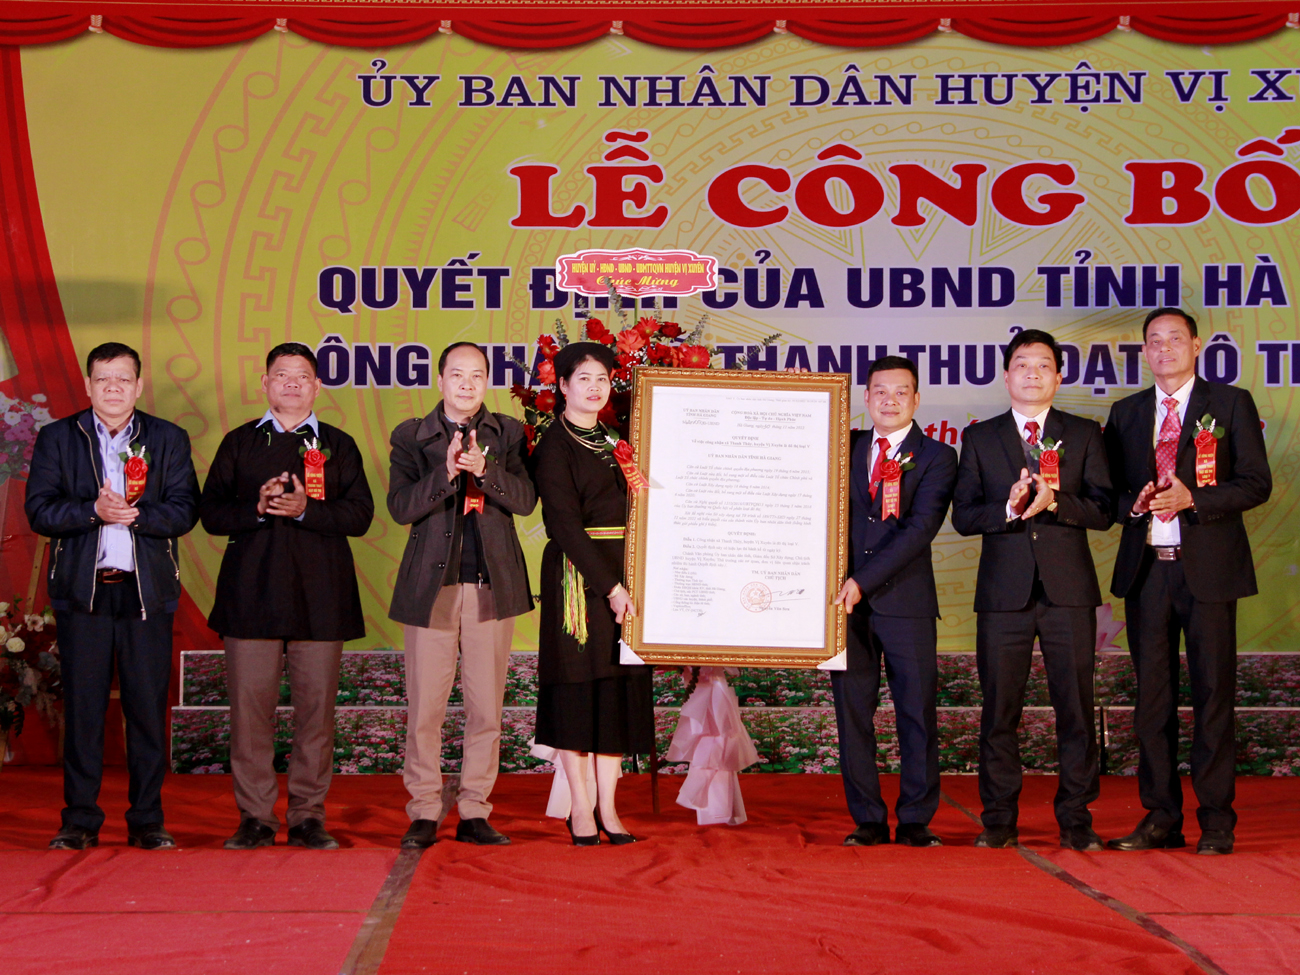 Lãnh đạo Sở Xây dựng và huyện Vị Xuyên trao Quyết định của UBND tỉnh công nhận xã Thanh Thủy đạt đô thị loại V cho xã Thanh Thủy.
